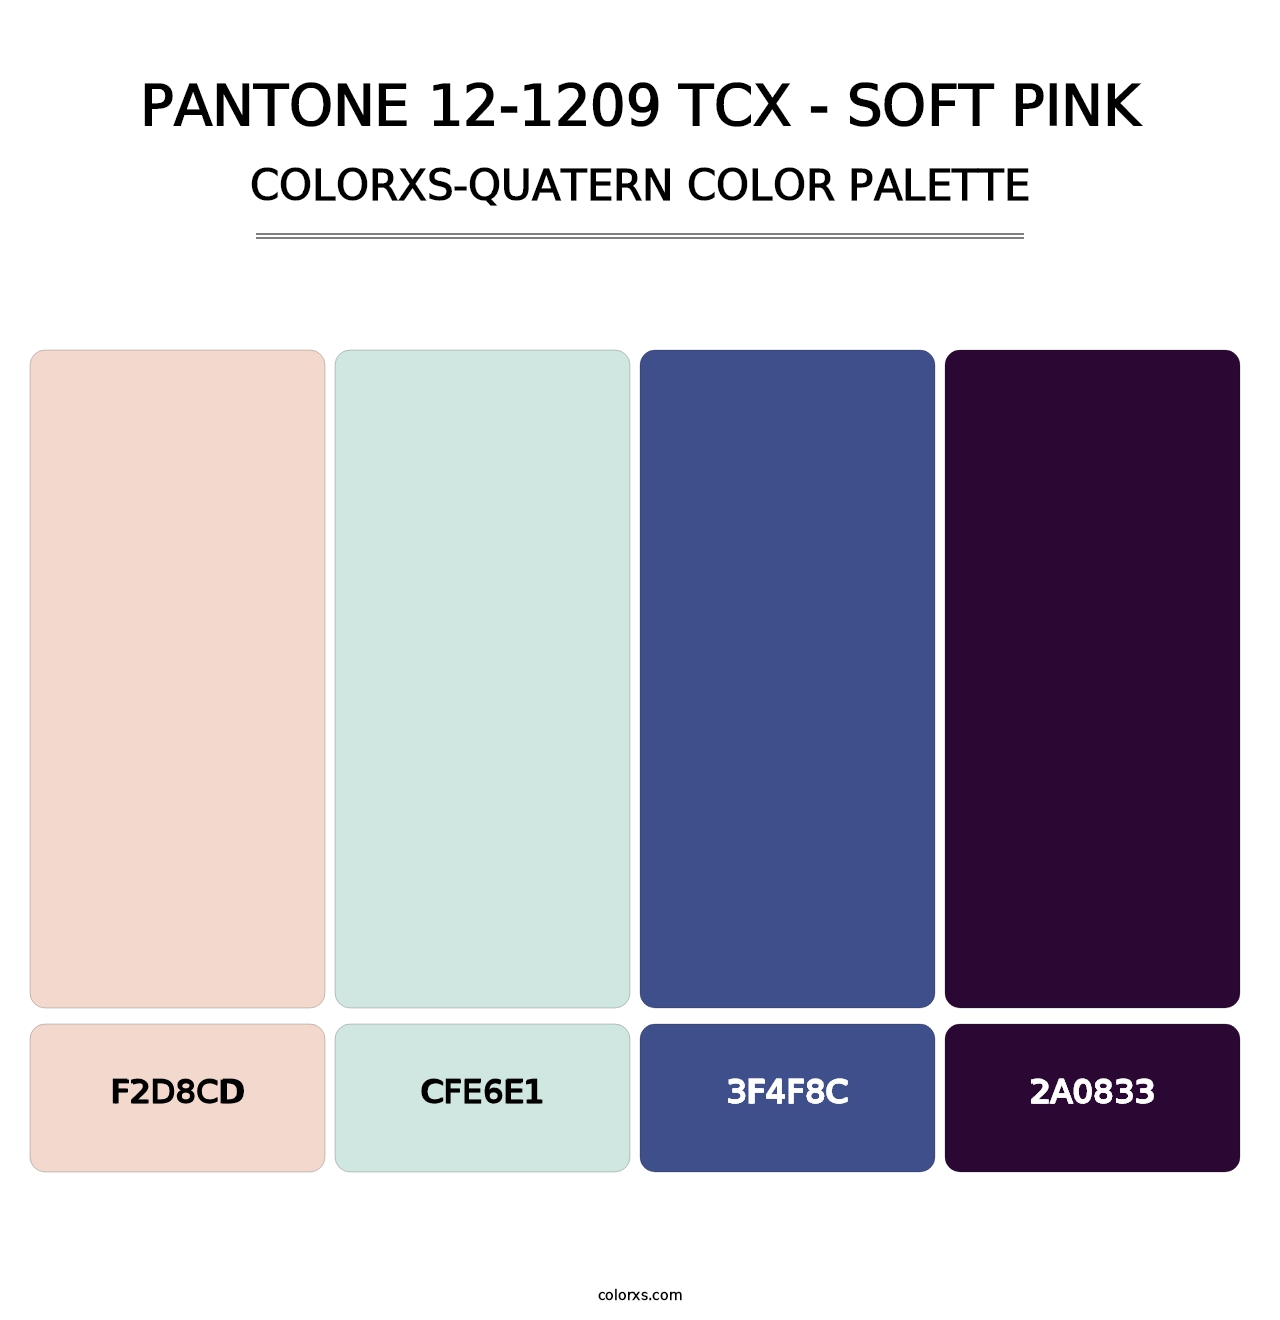 PANTONE 12-1209 TCX - Soft Pink - Colorxs Quatern Palette